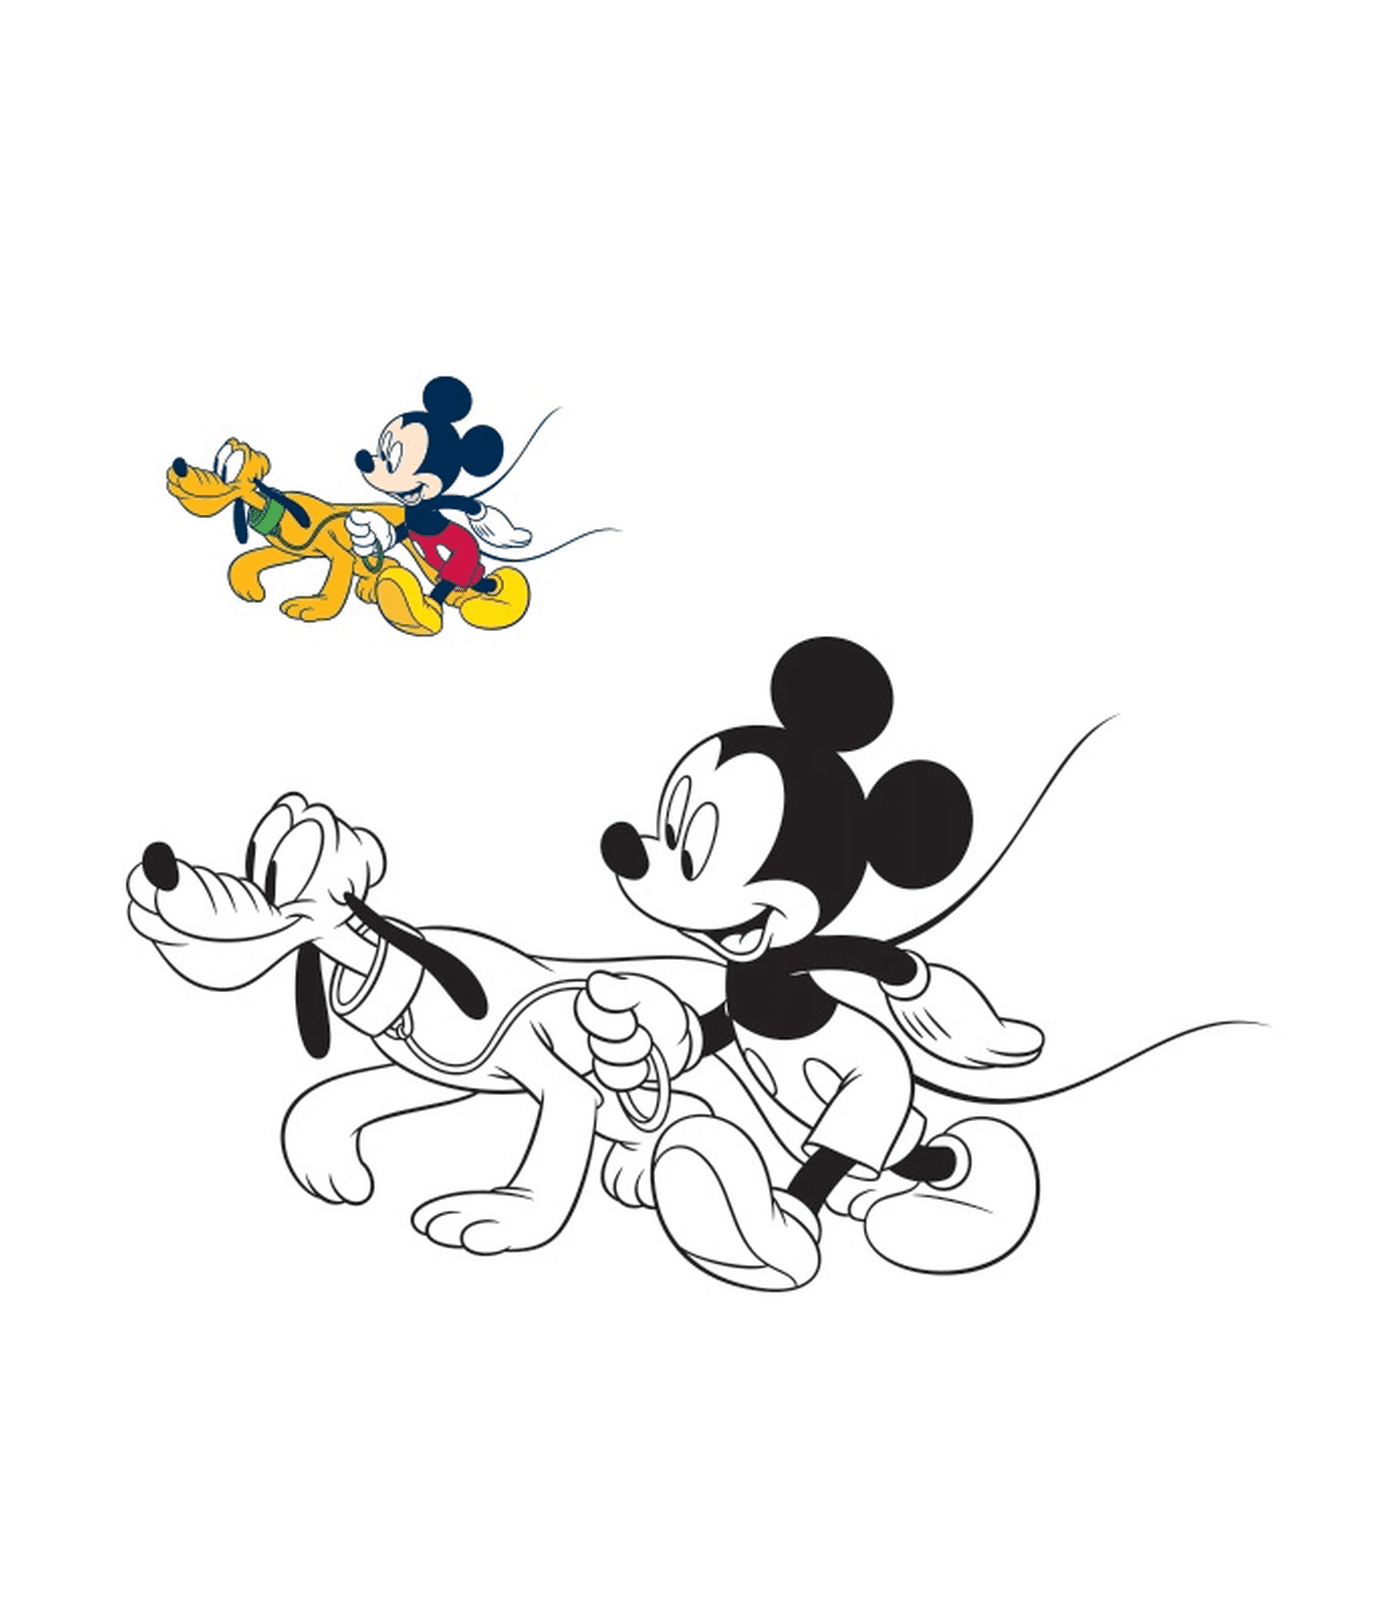  Микки Маус гуляет со своей собакой Плутон 